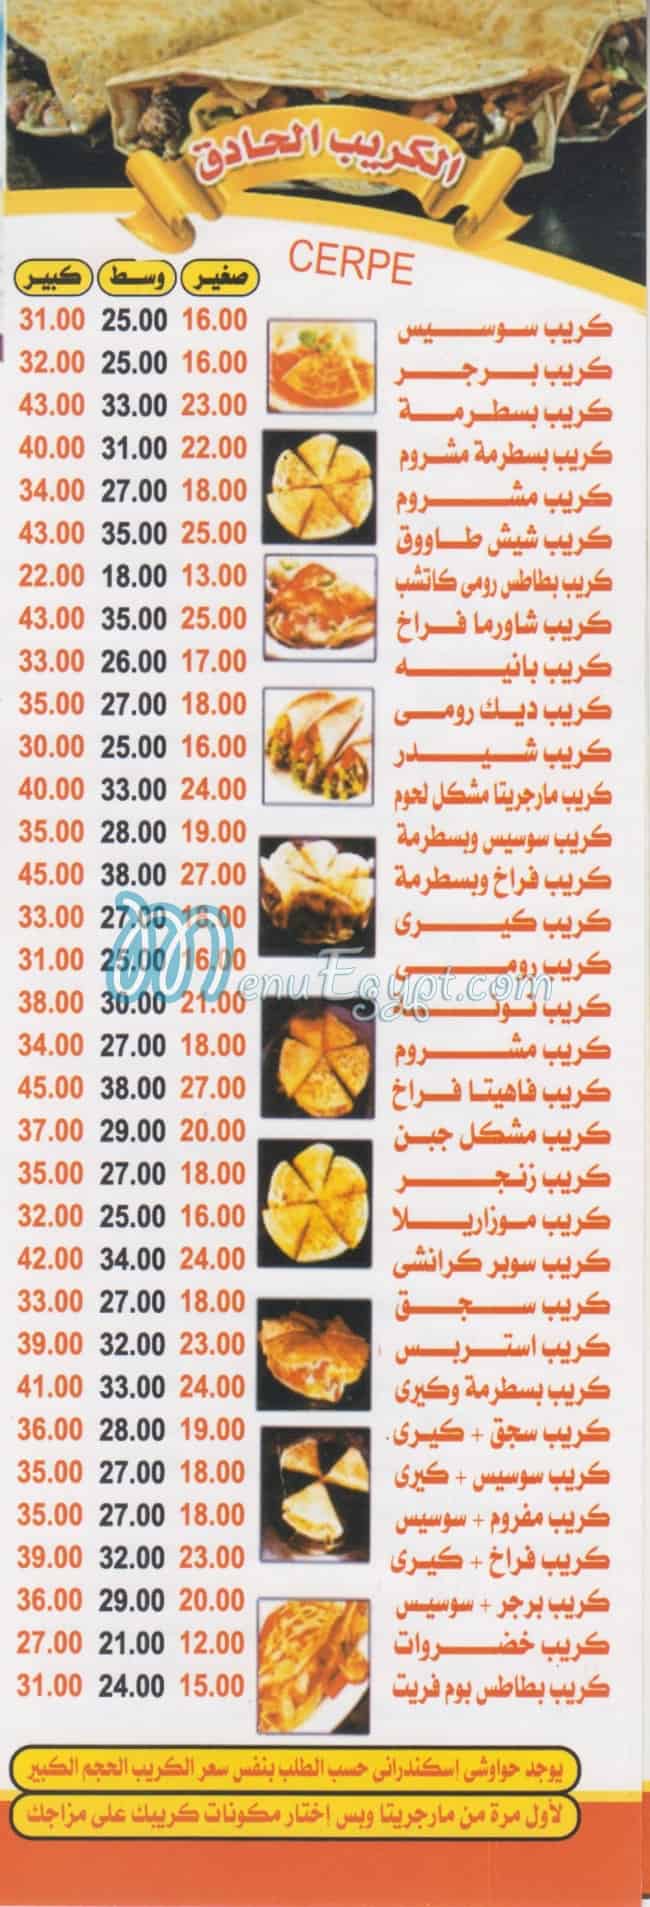 Margrita Dar El salam menu prices